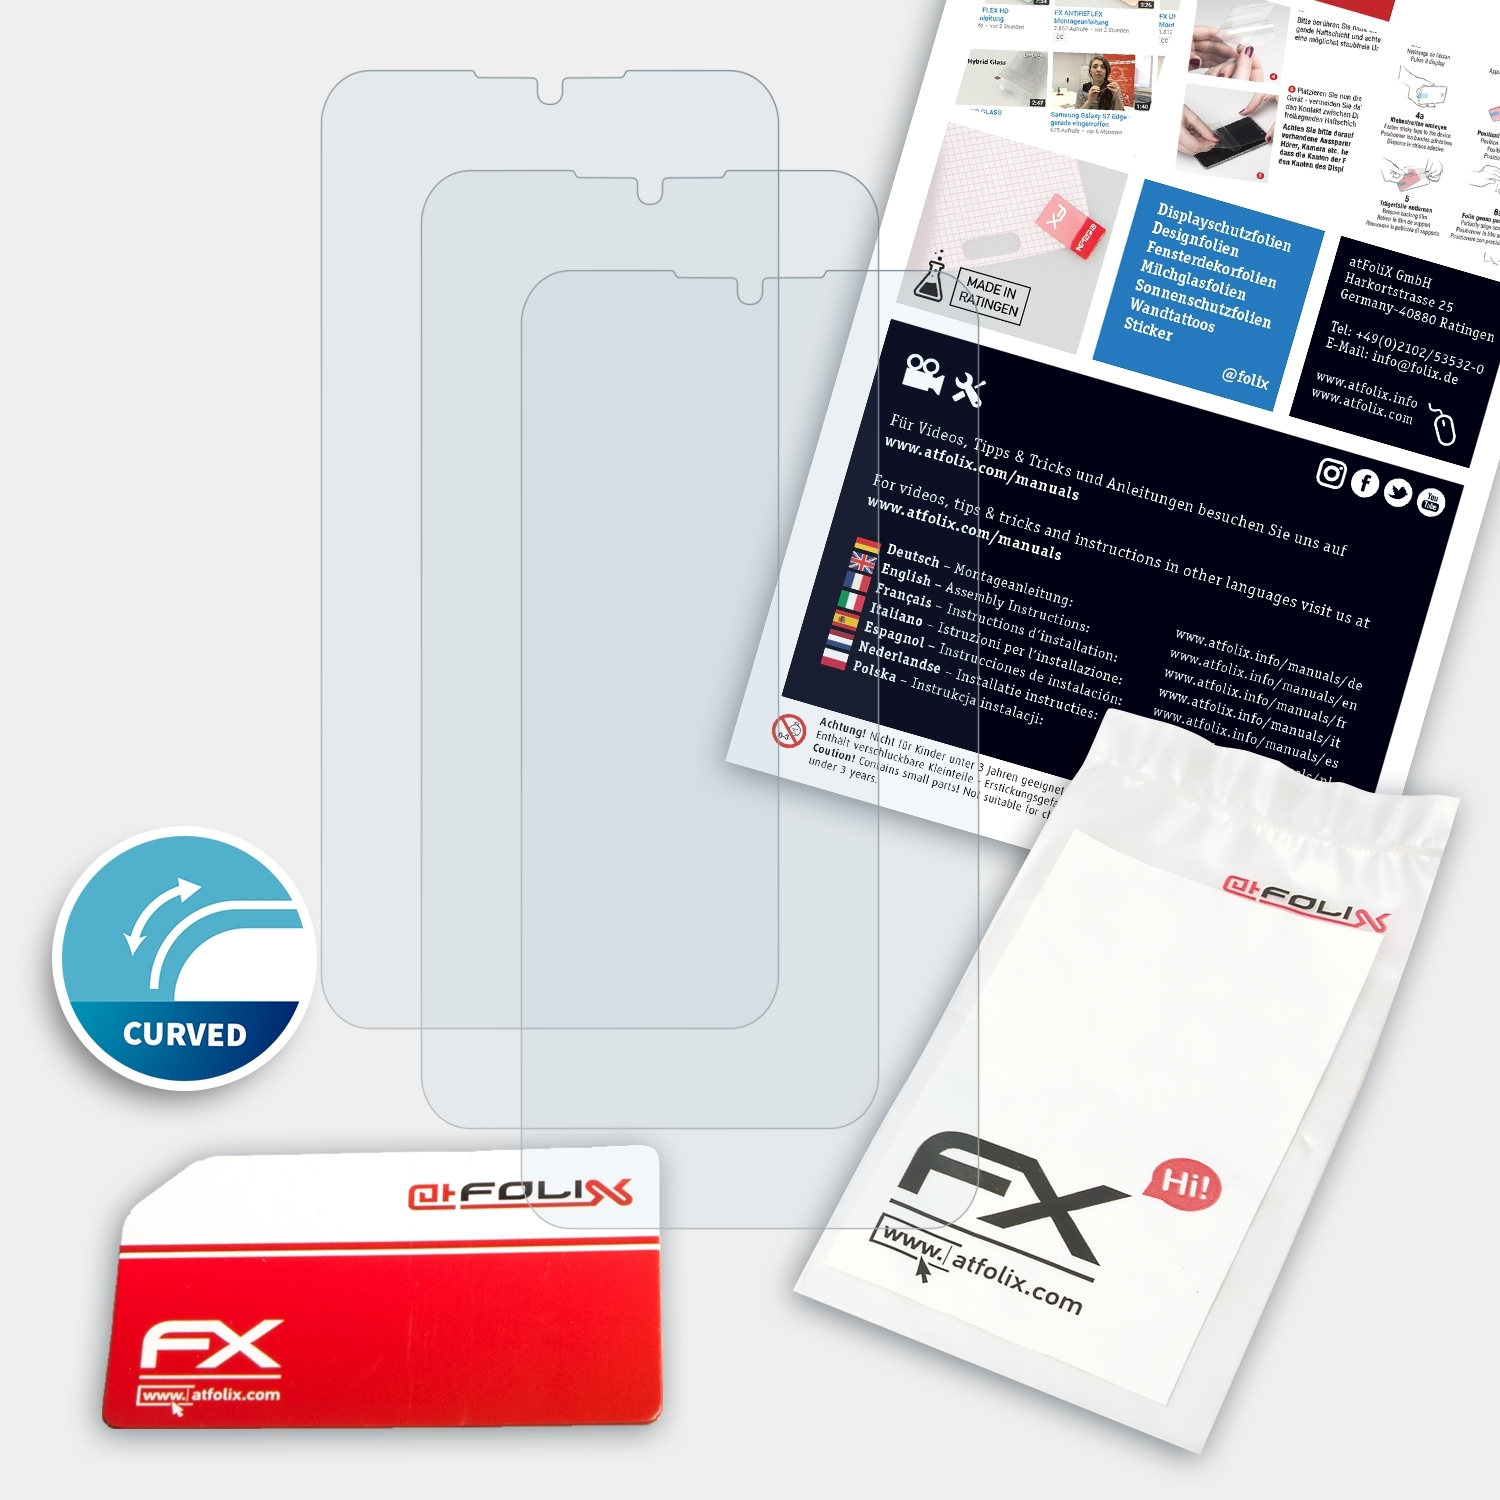 A5 FX-ActiFleX 3x UMiDigi Displayschutz(für ATFOLIX Pro)